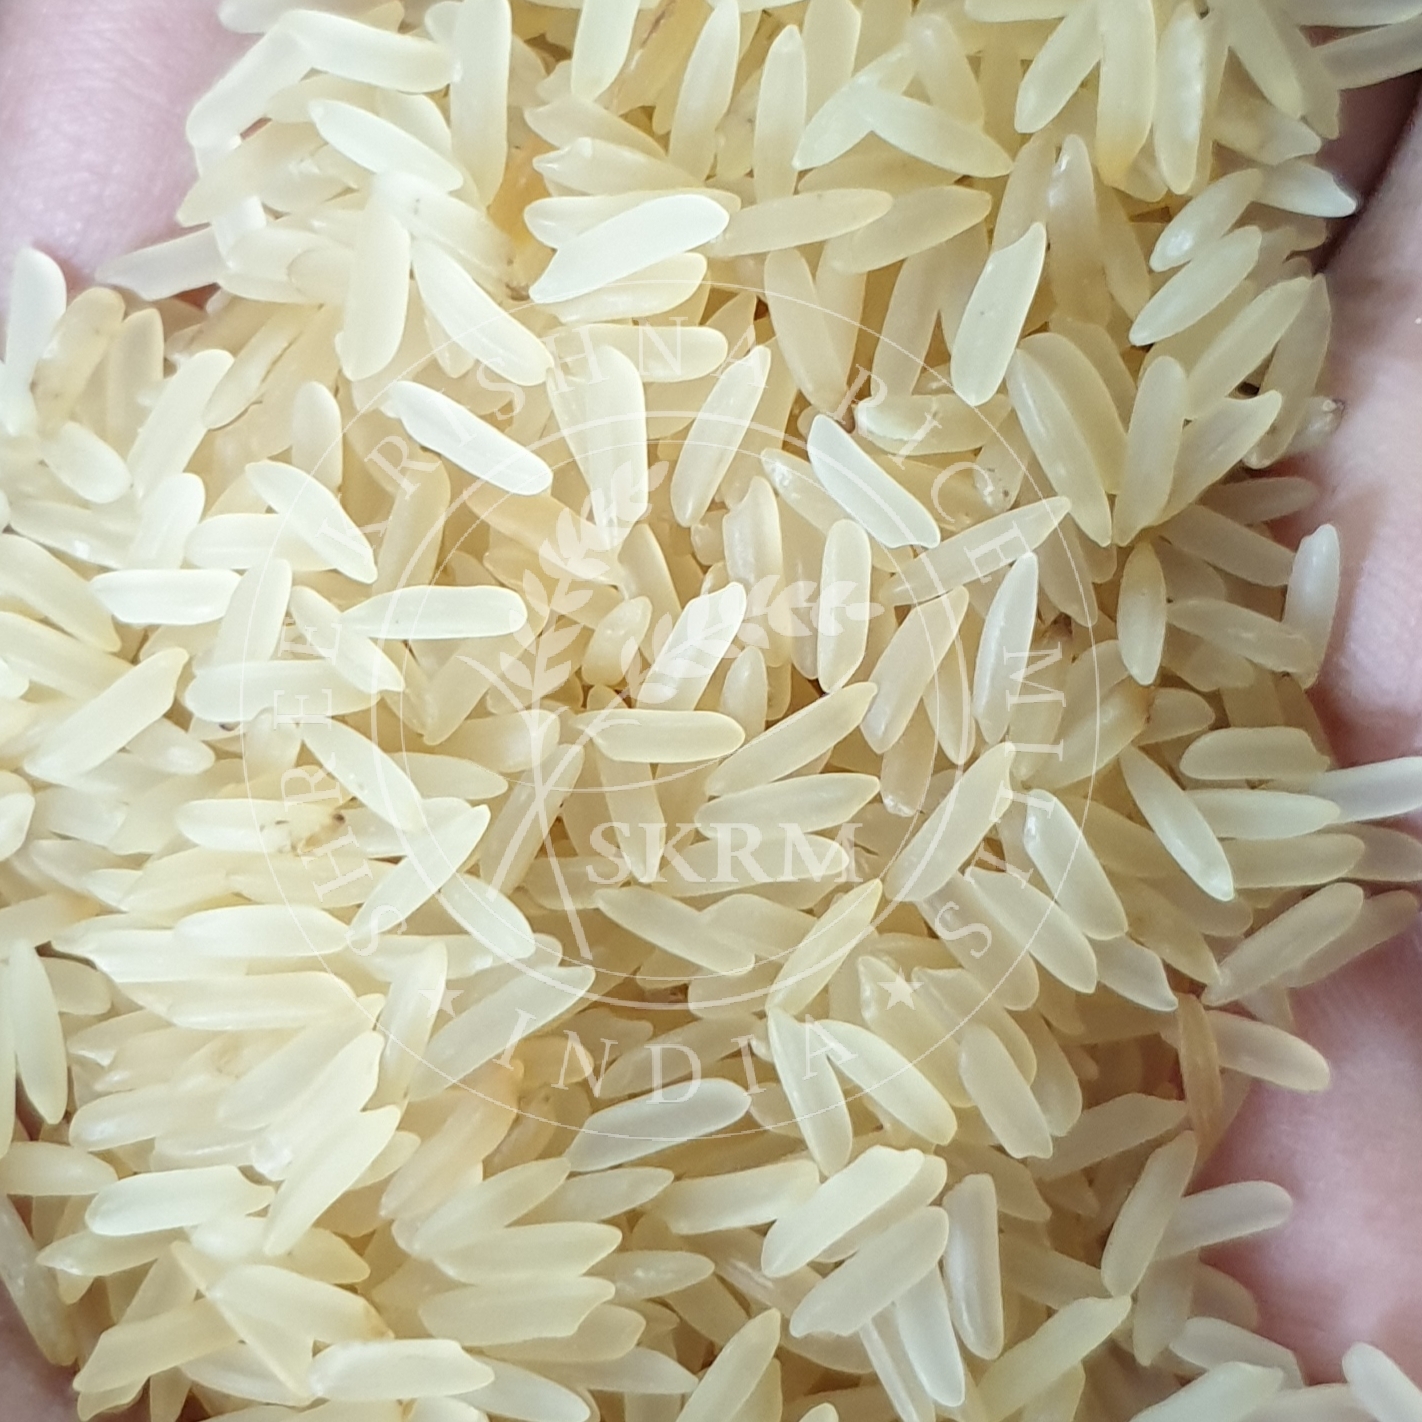 PR14 Golden Sella Non Basmati Rice